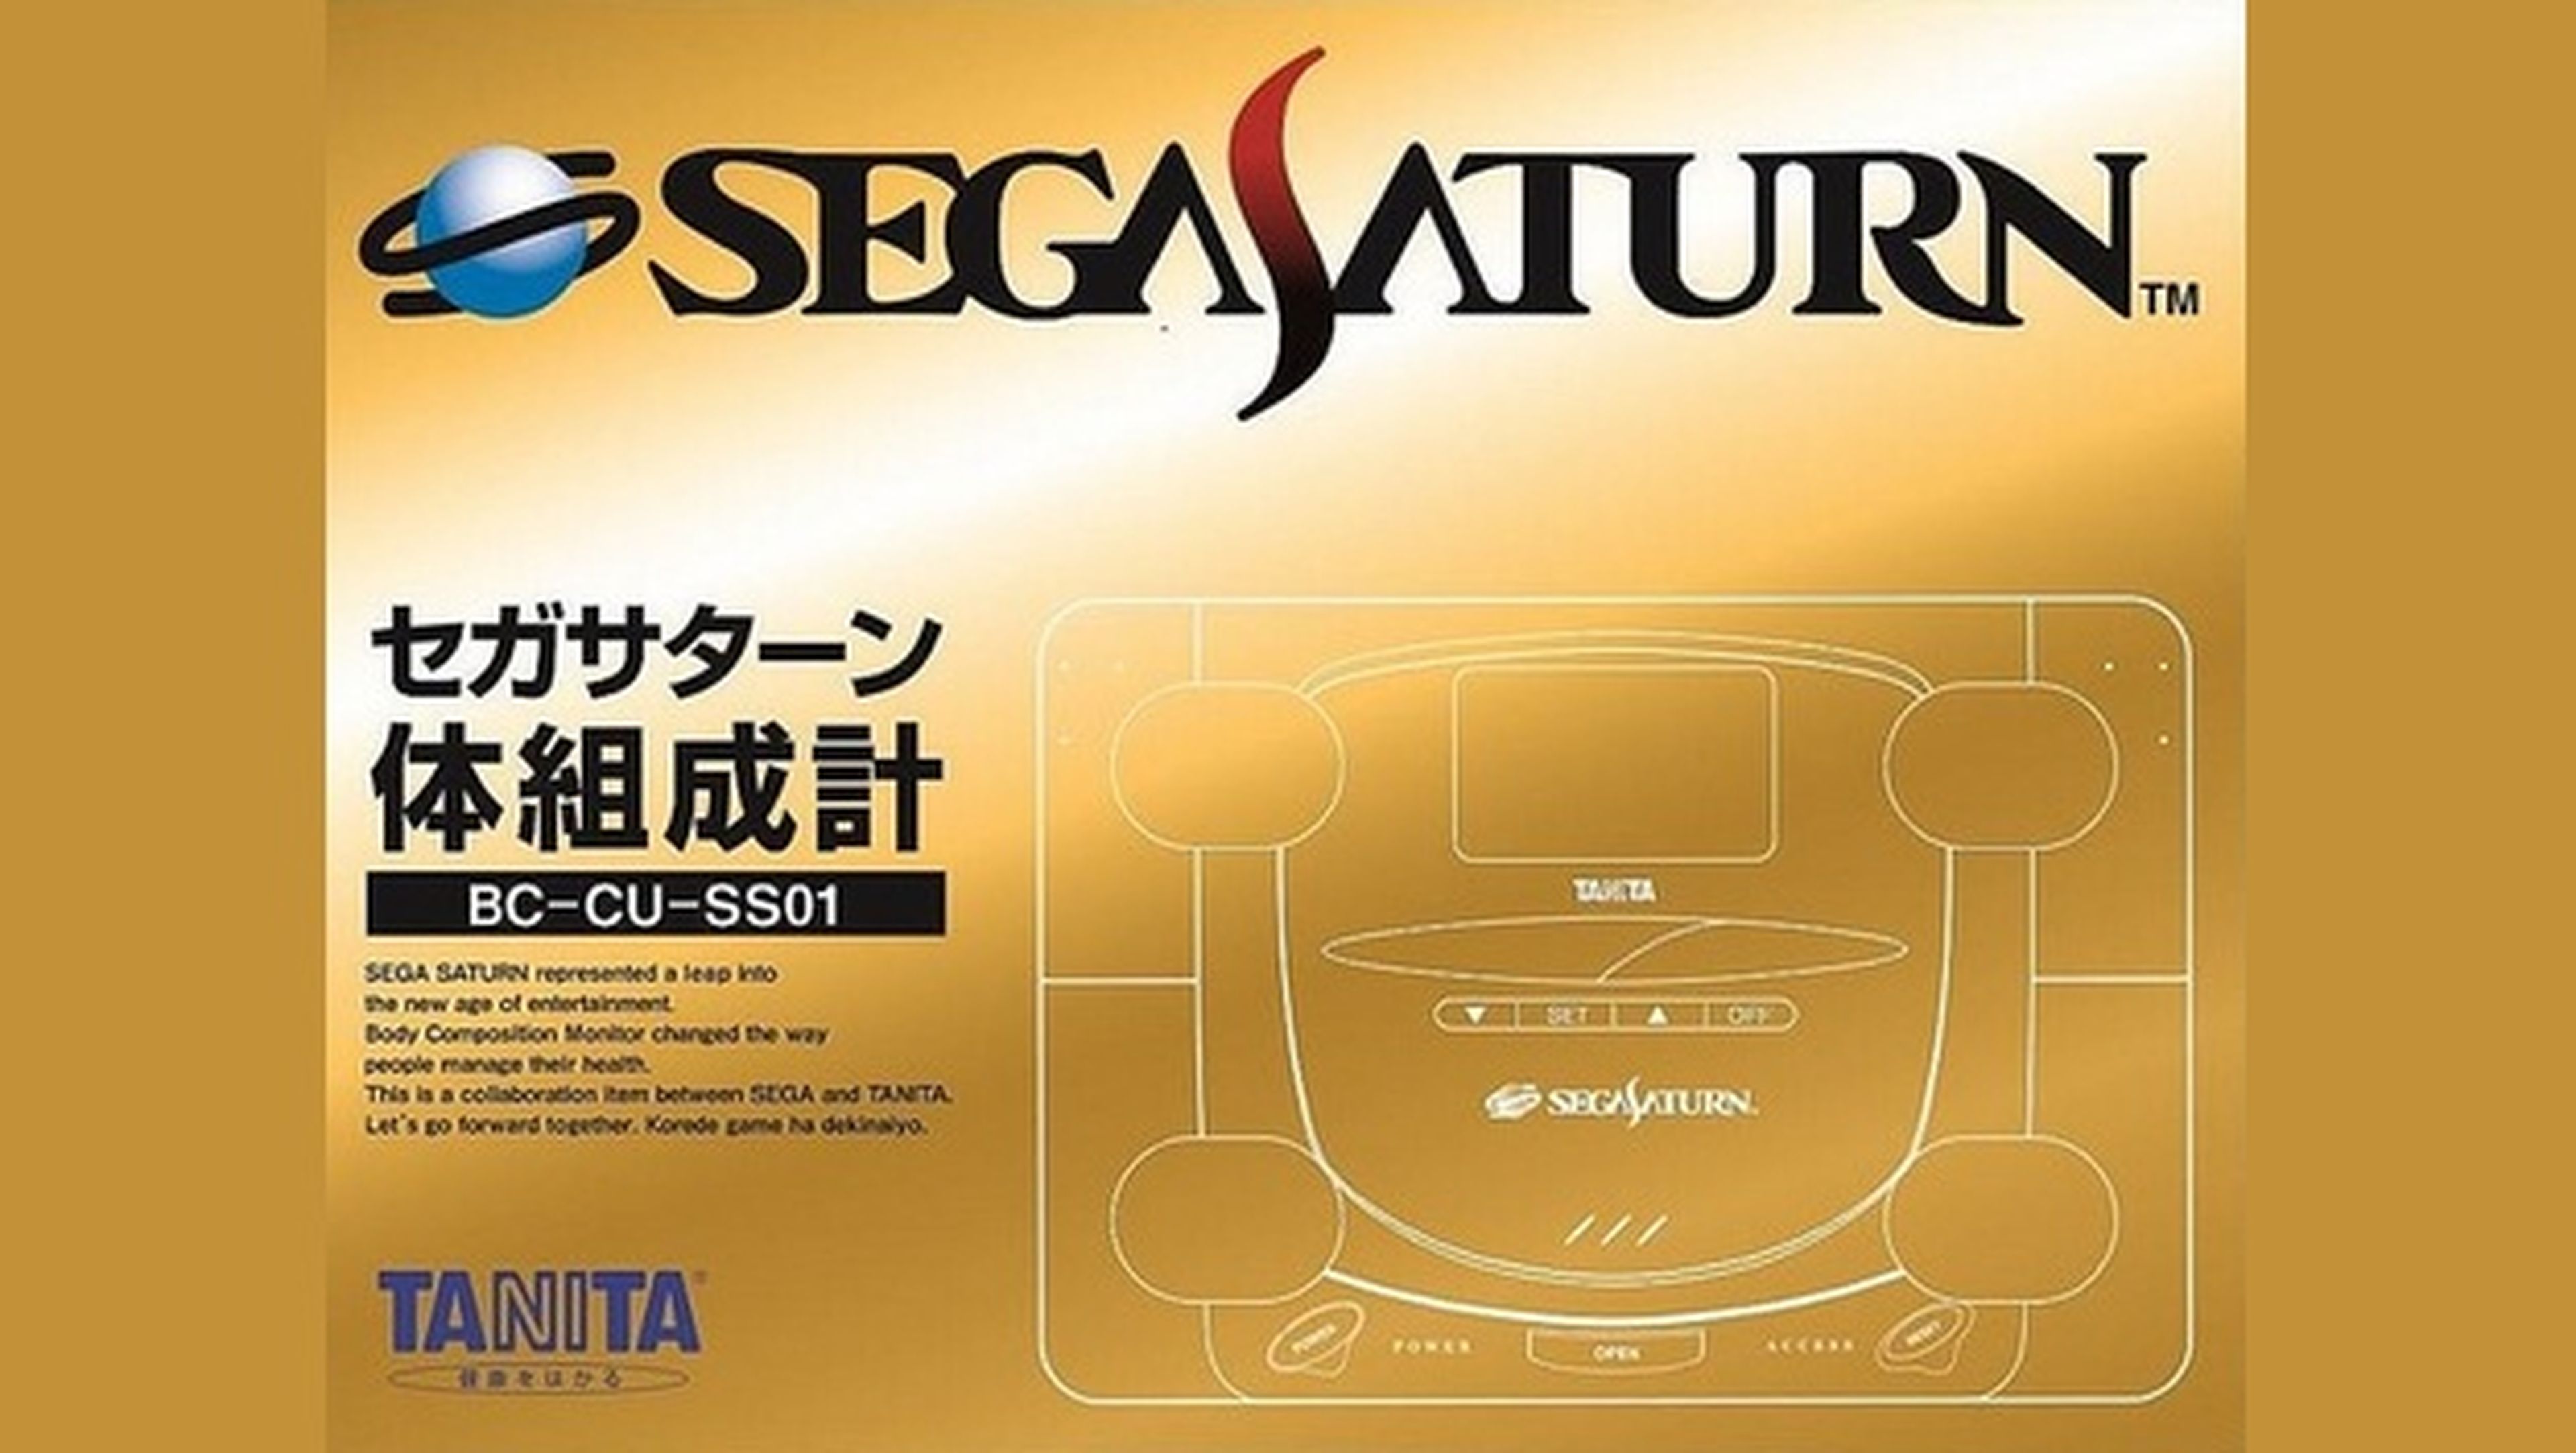 La nueva Sega Saturn no es lo que esperas